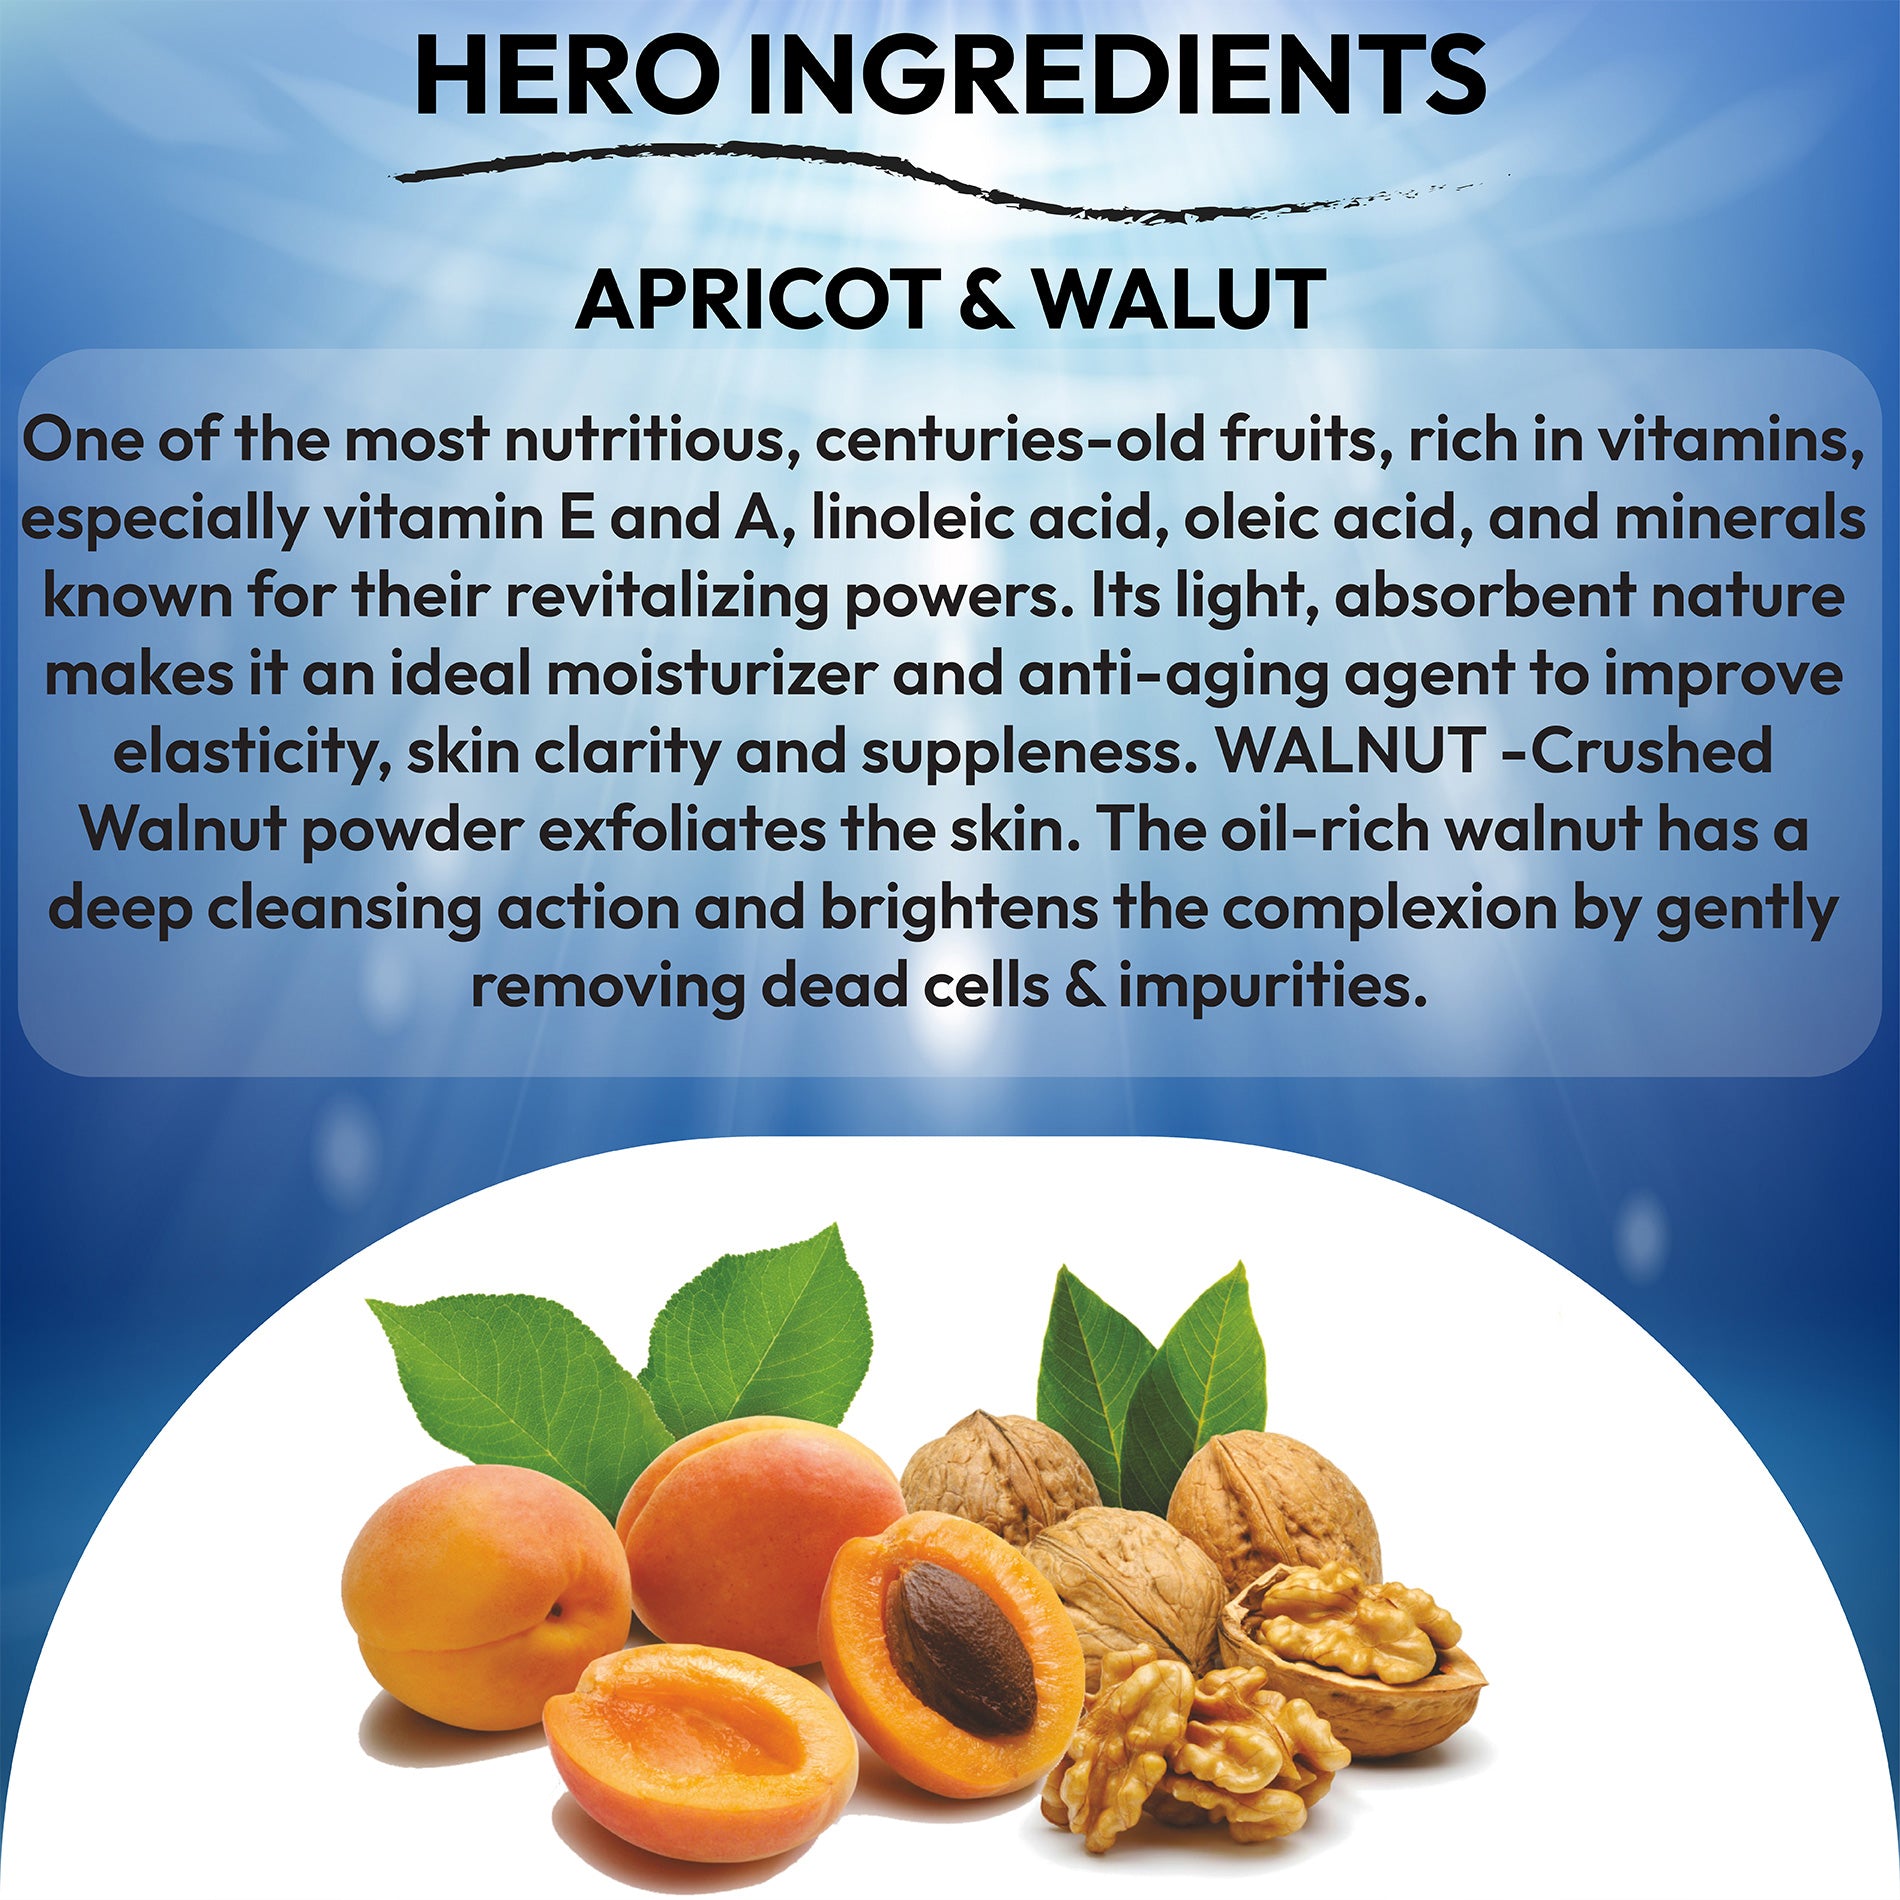 Ingredients- Apricot & walnut scrub